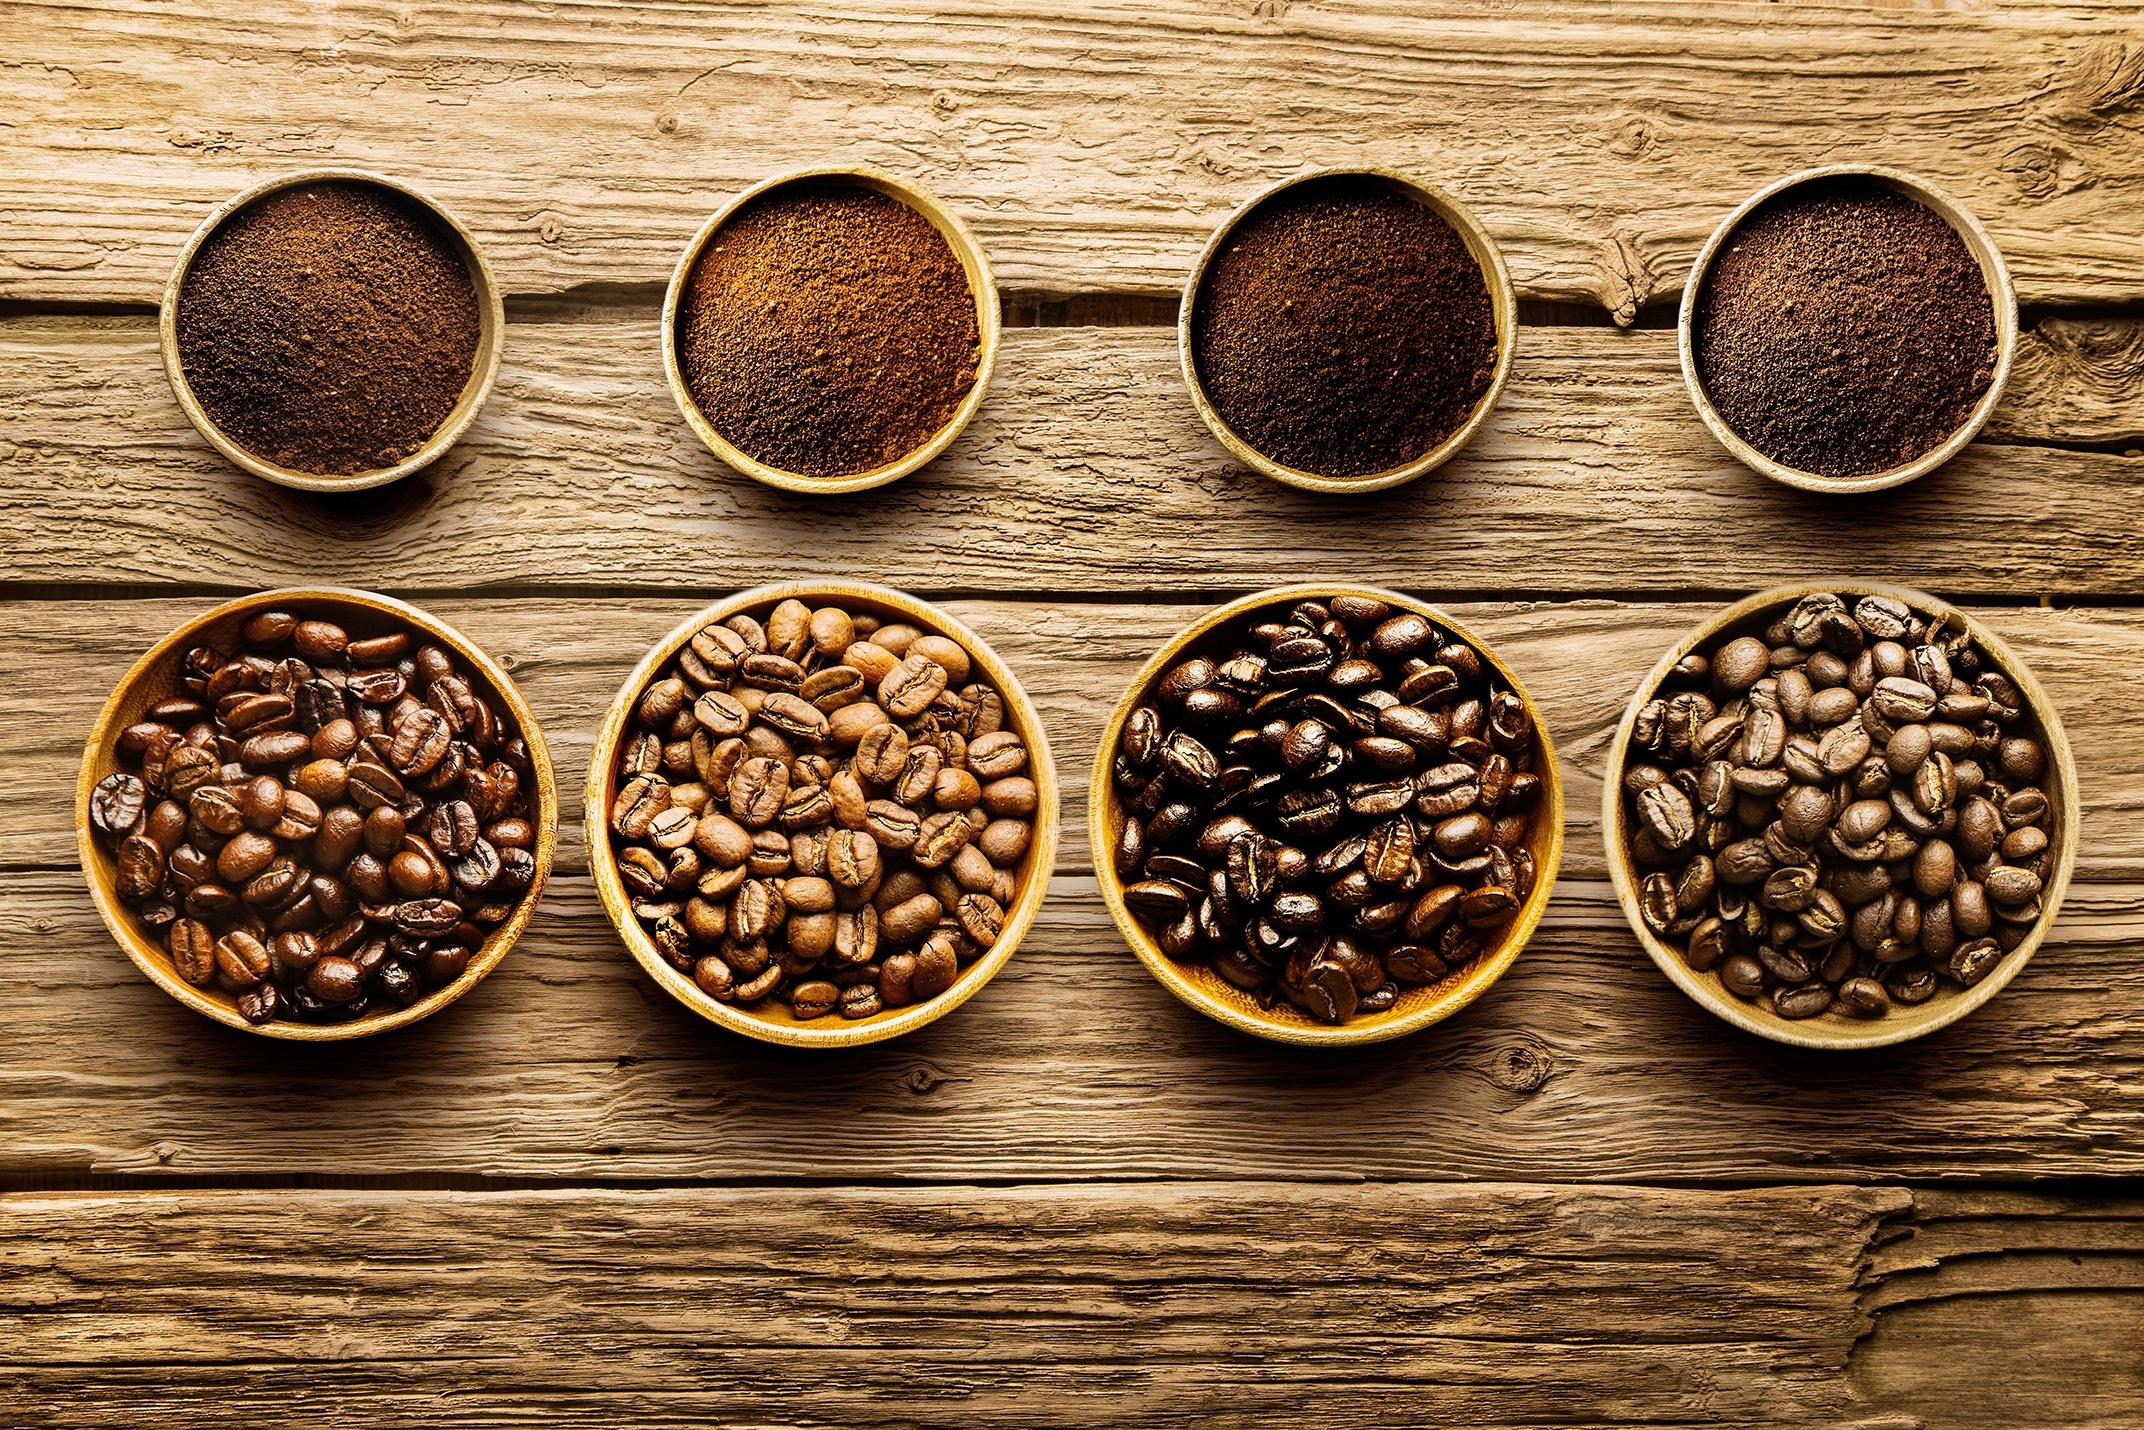 Resultado de imagem para coffee beans different color